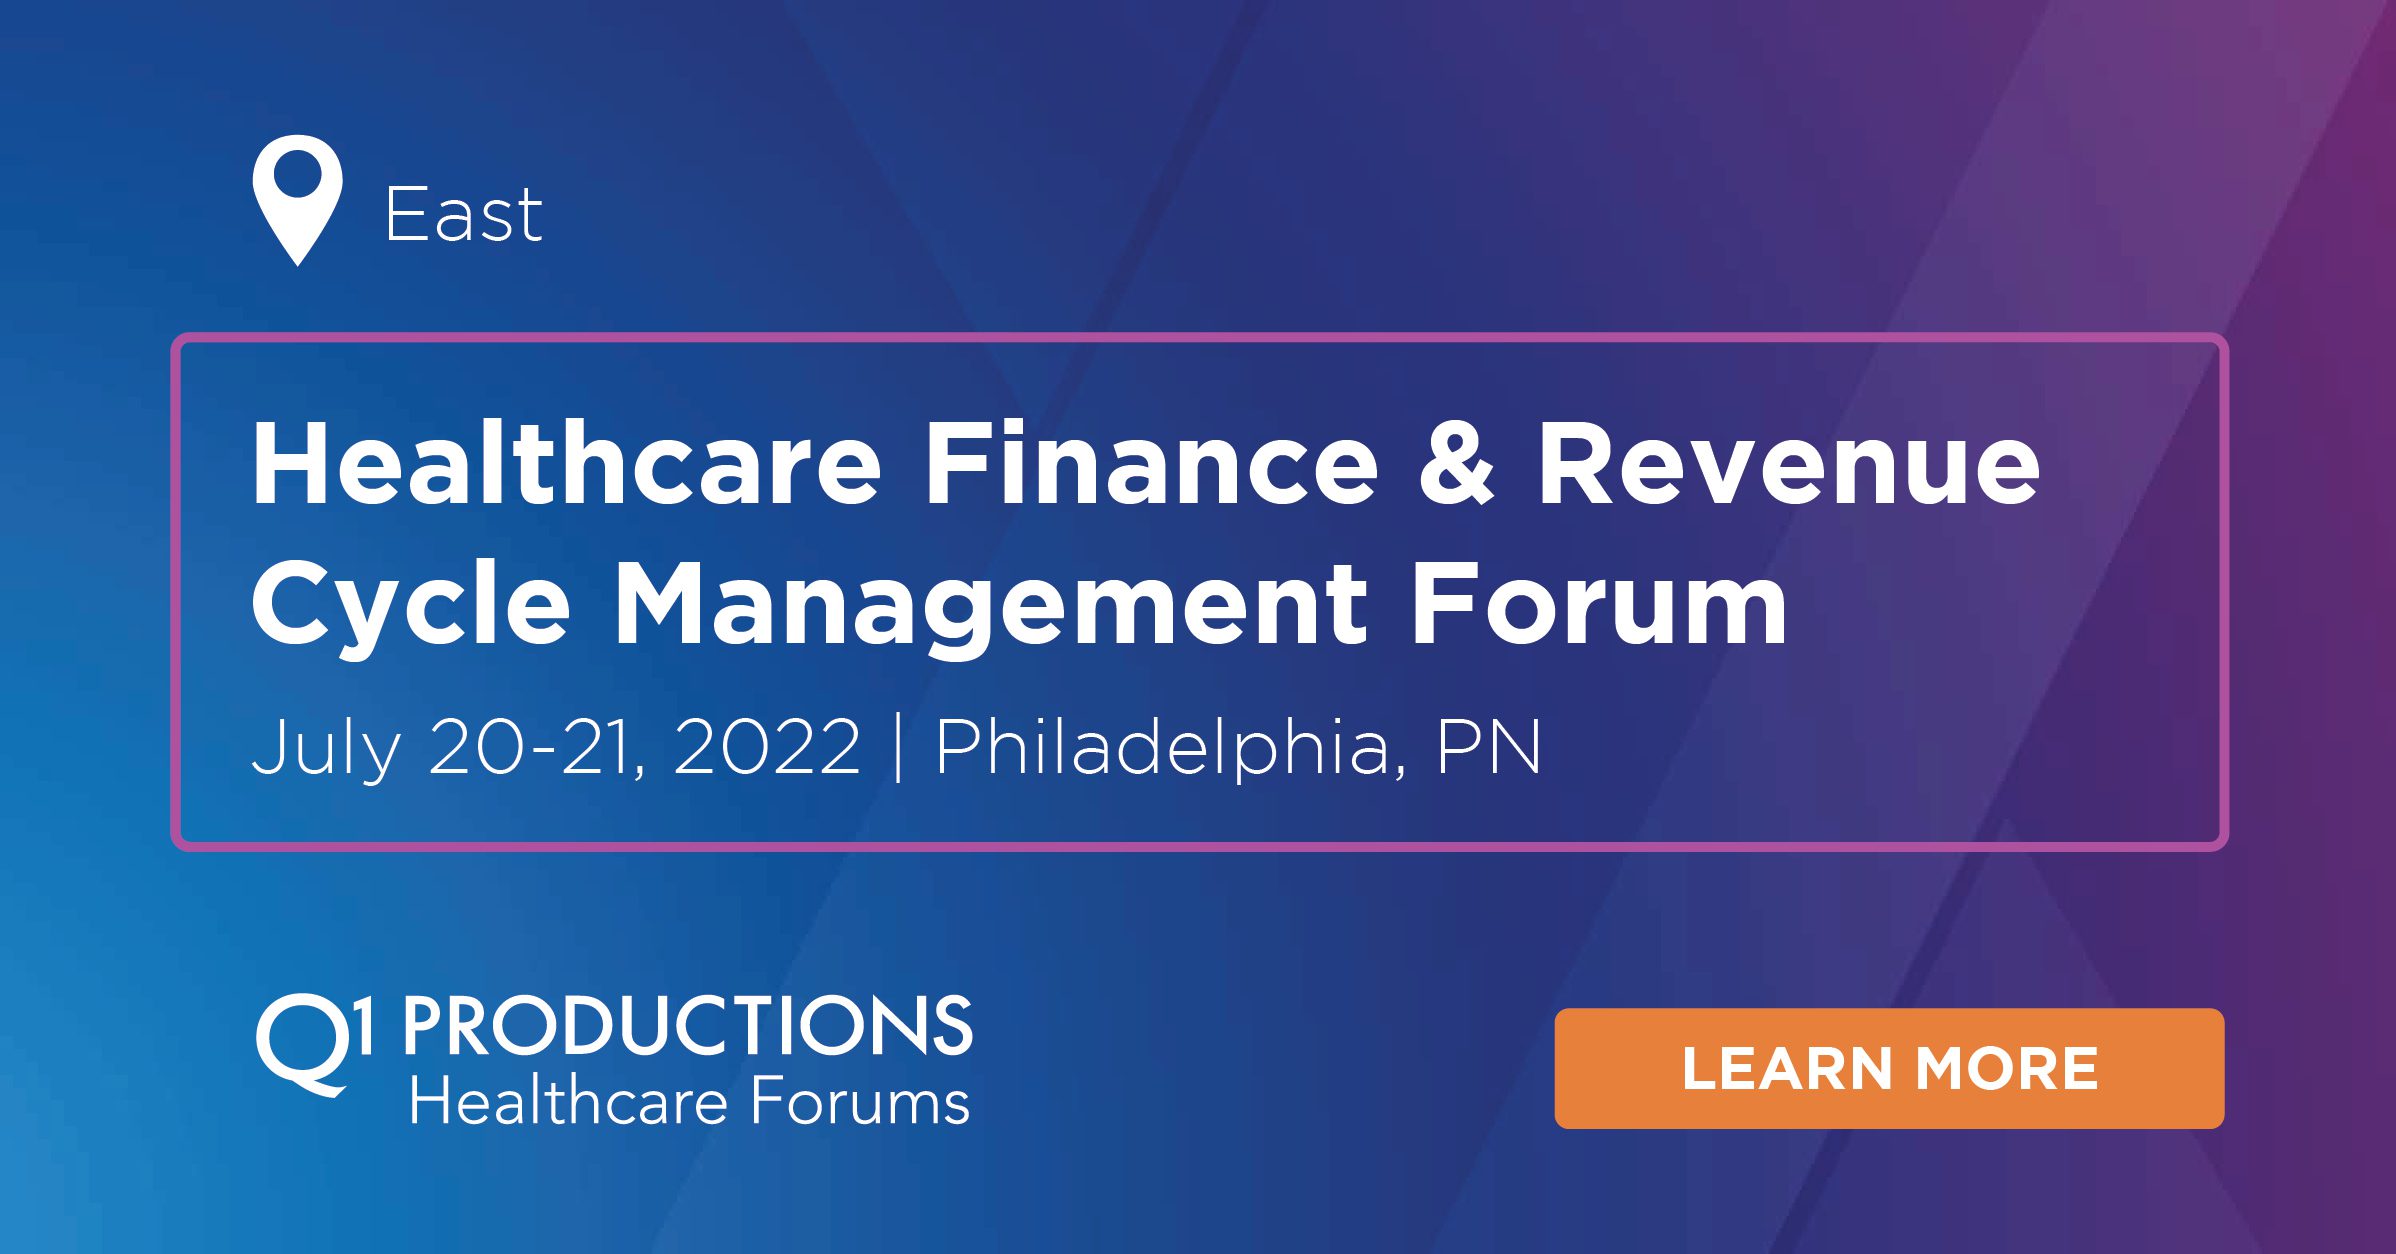 Healthcare Finance & Revenue Cycle Management Forum